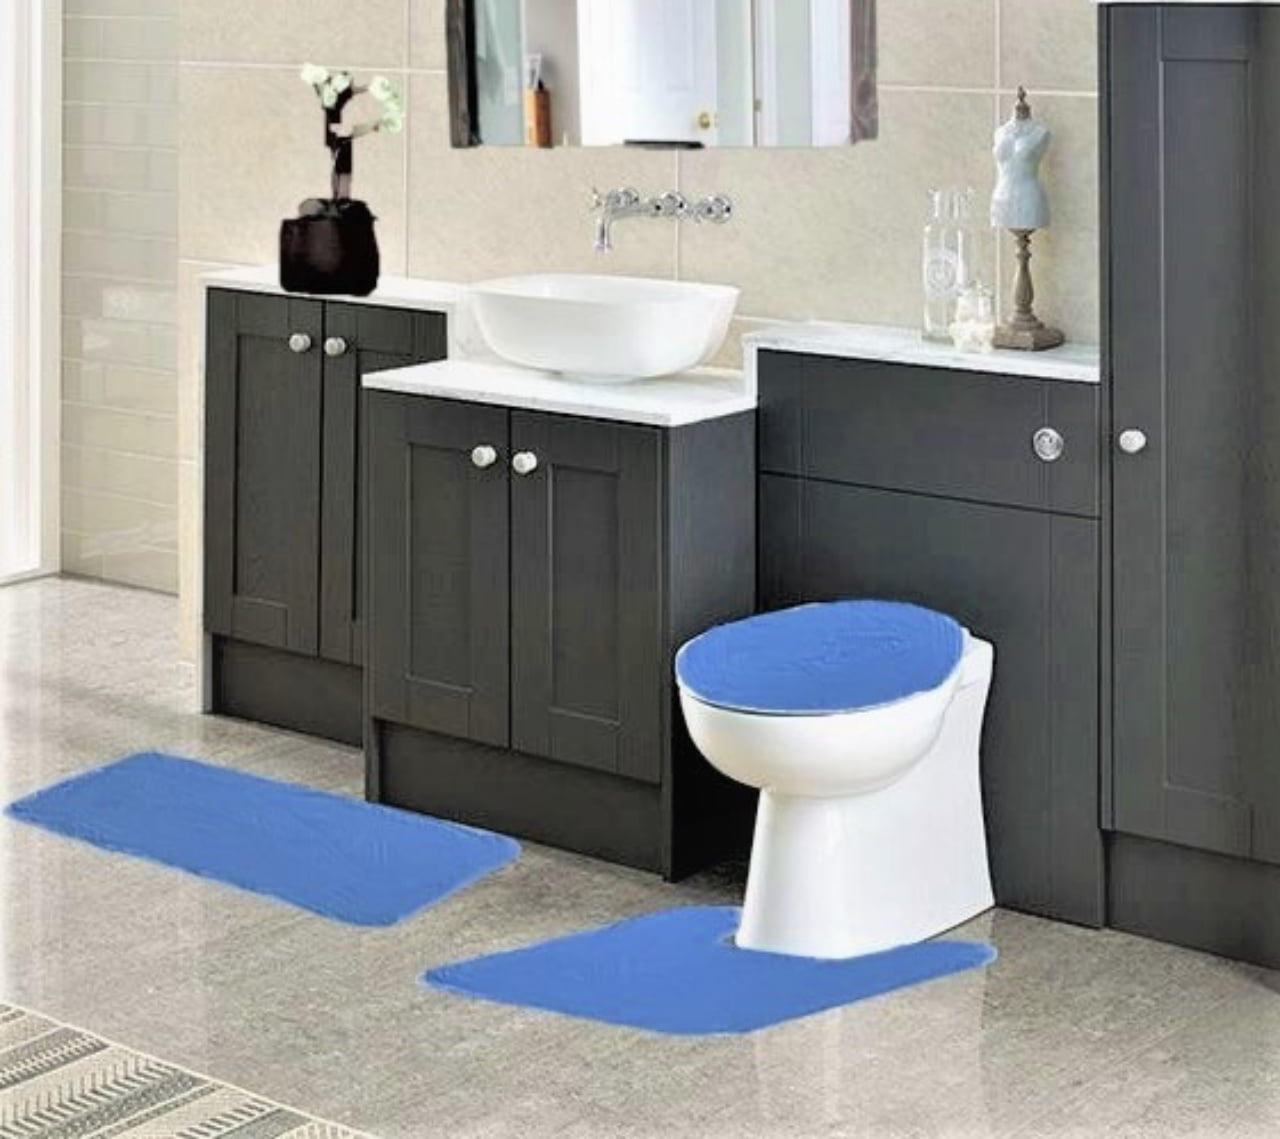 3PCS BATHROOM SET BATH RUG CONTOUR MAT TOILET LID COVER FLORAL DESIGN NON-SLIP 